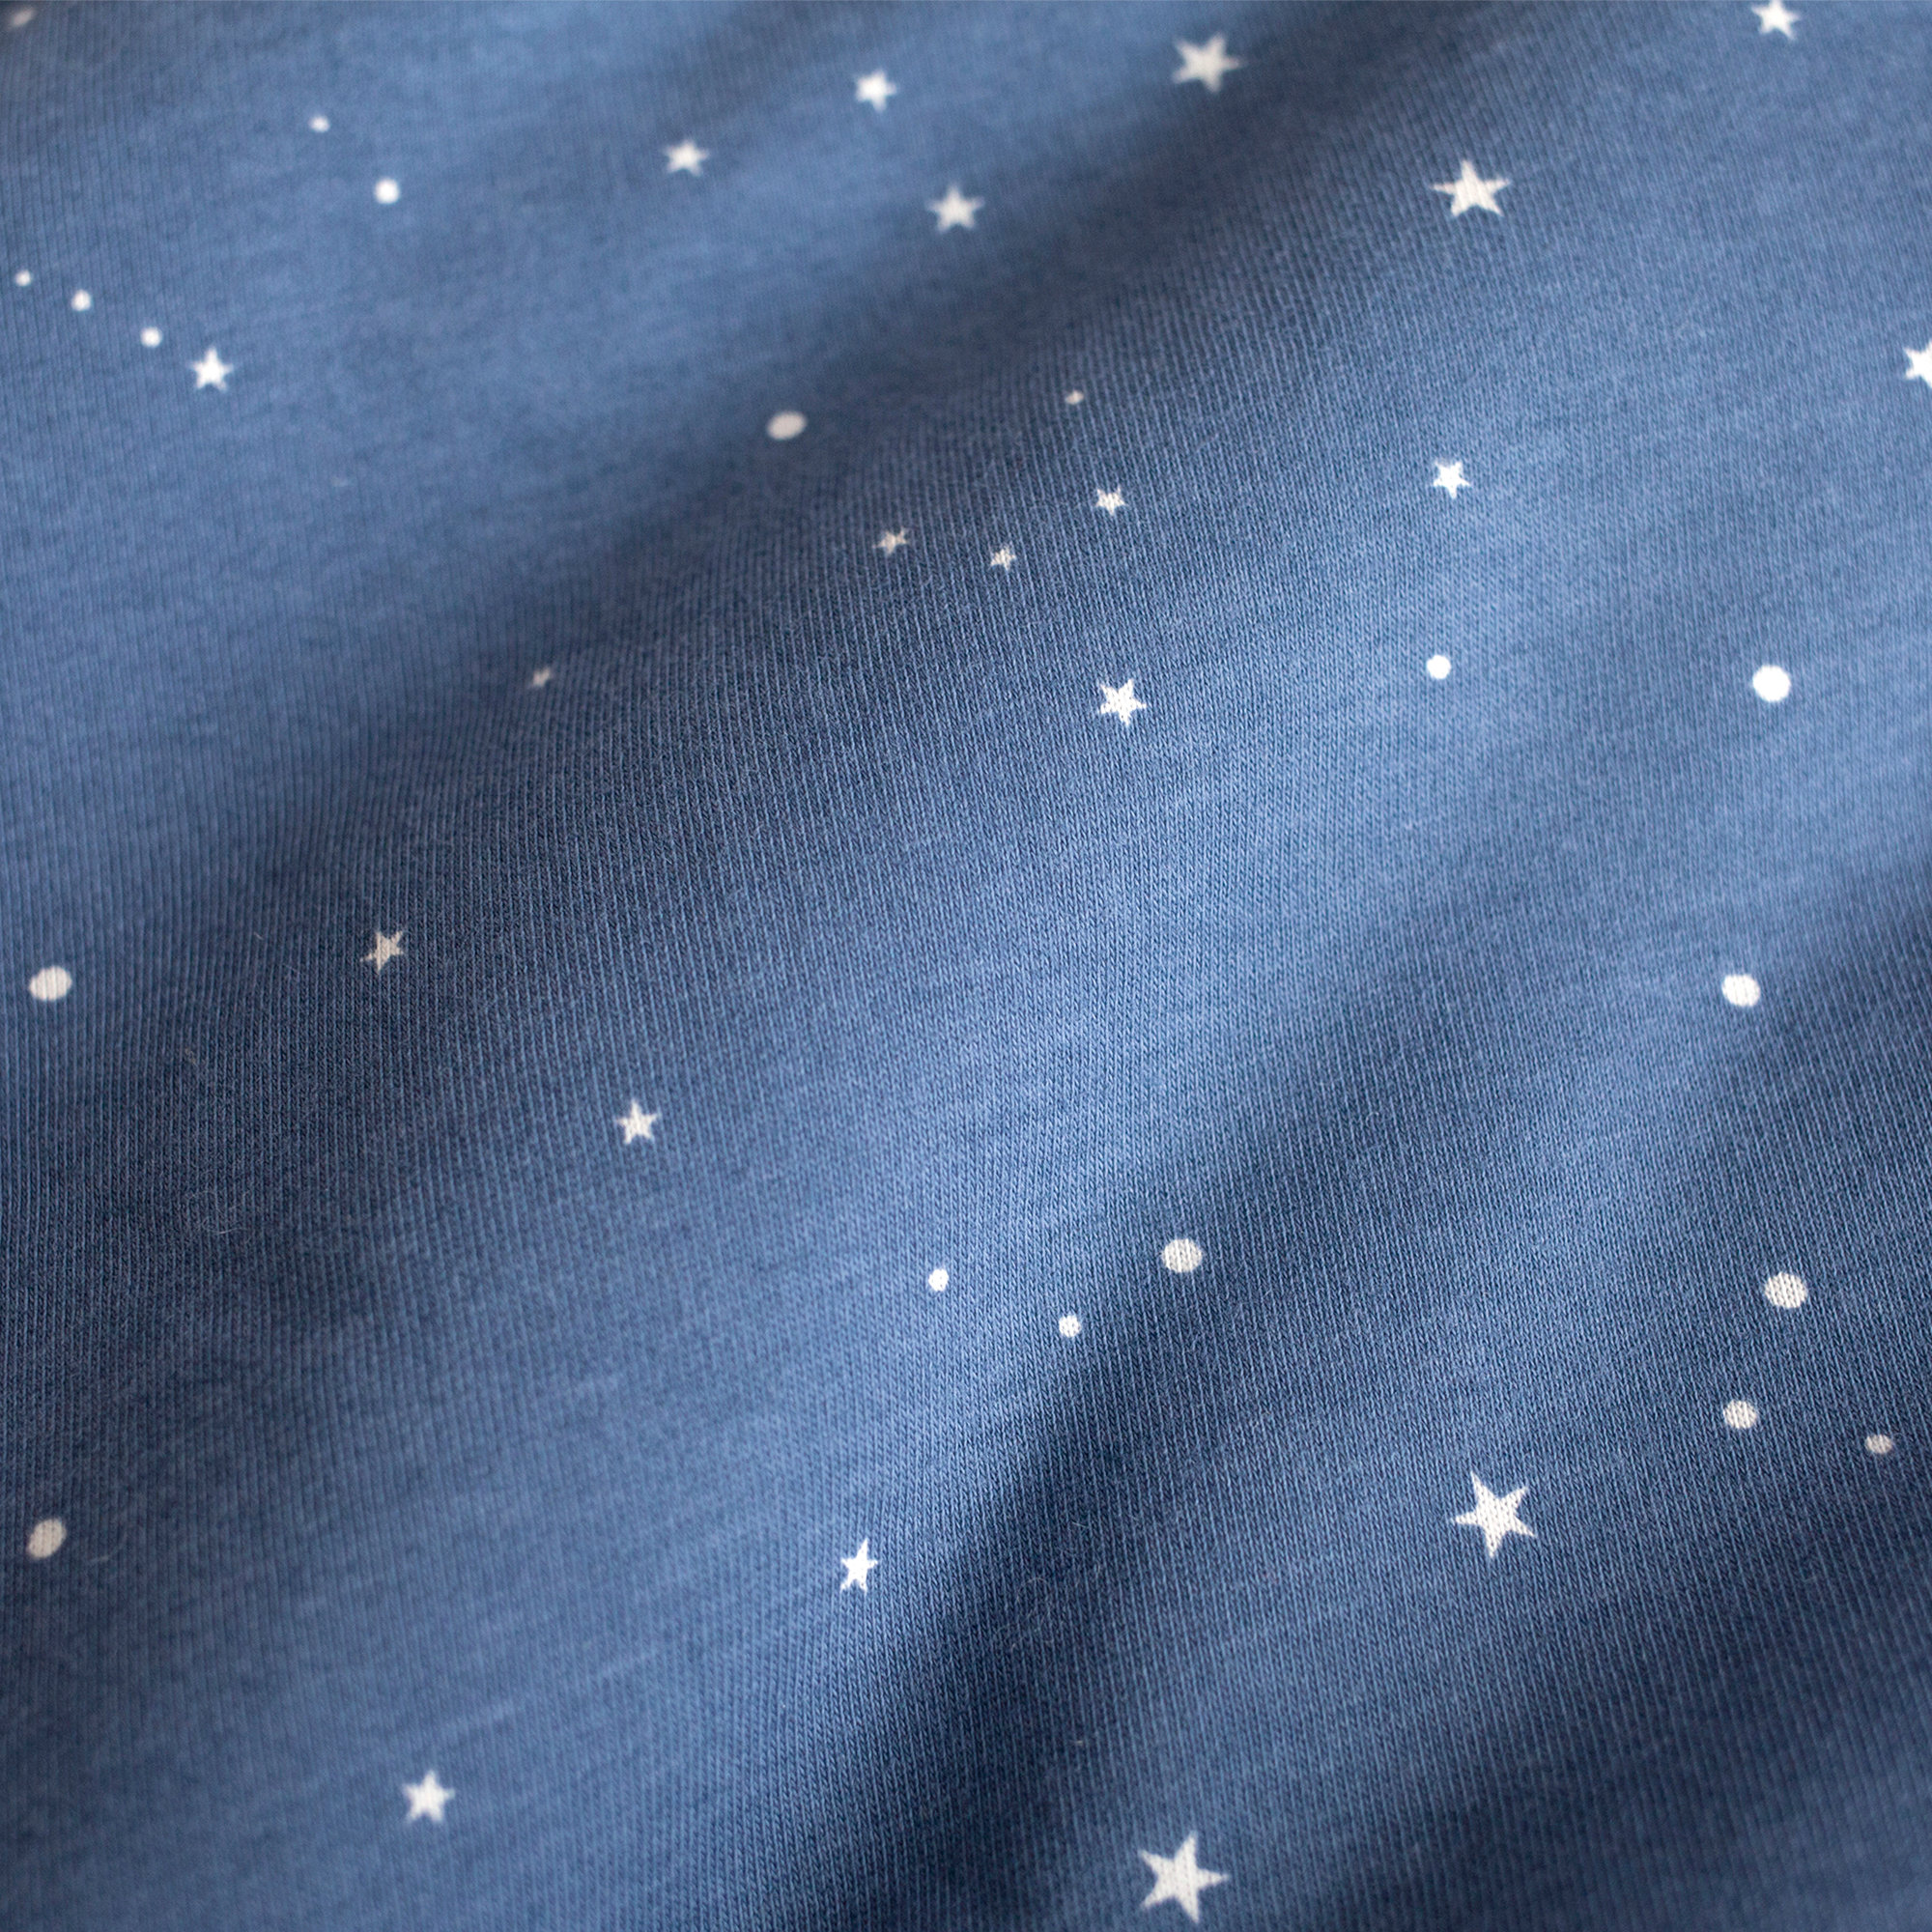 Playpen bumper Pady jersey + jersey 100x100x28cm STARY Little stars print shade[AWARENESS]